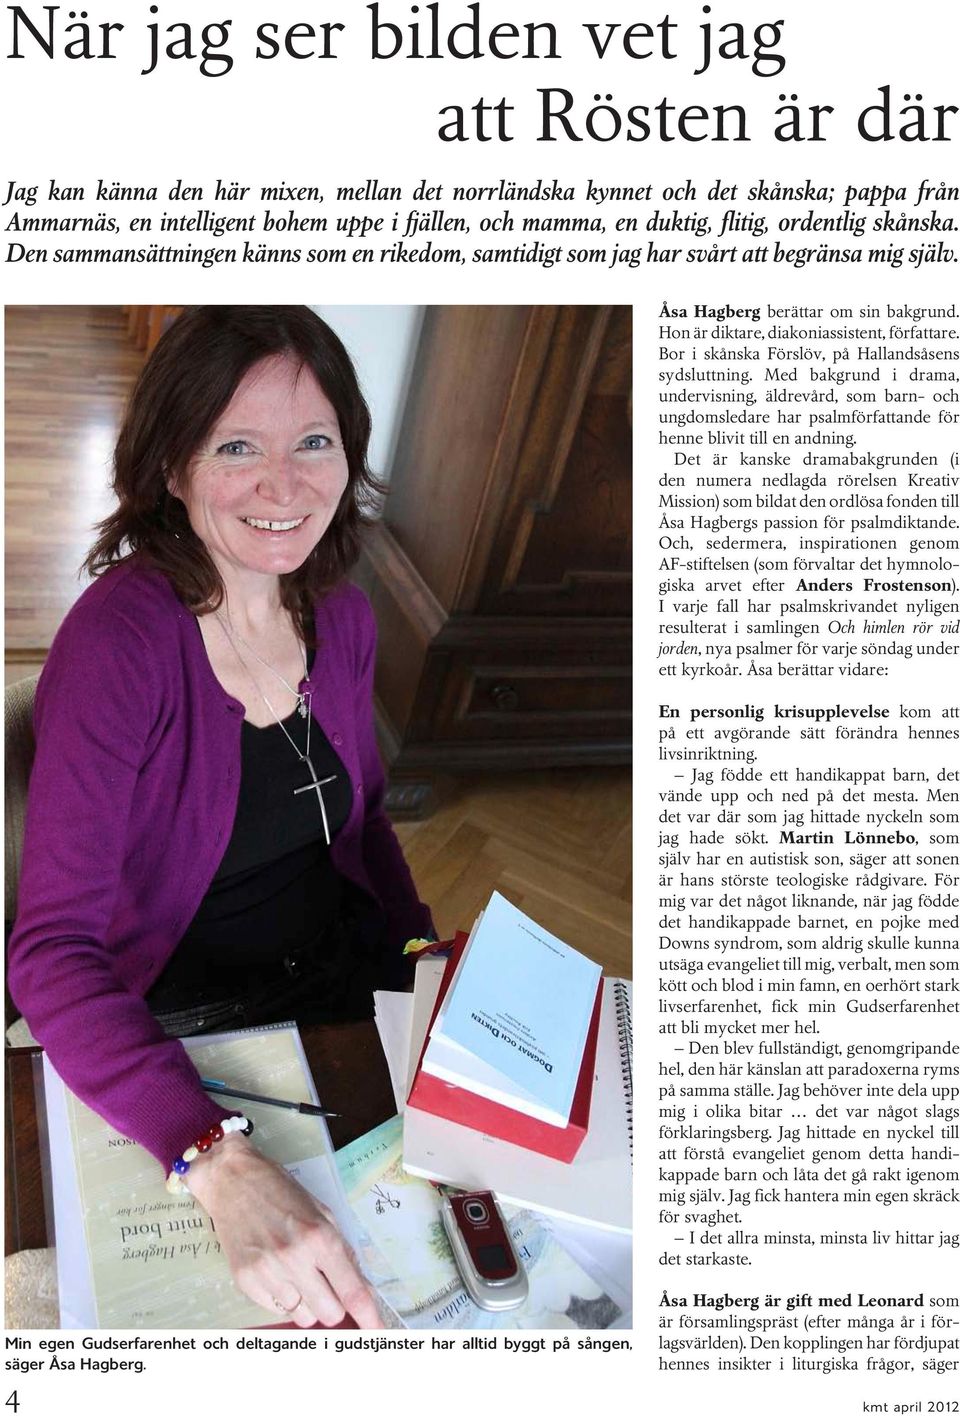 Hon är diktare, diakoniassistent, författare. Bor i skånska Förslöv, på Hallandsåsens sydsluttning.